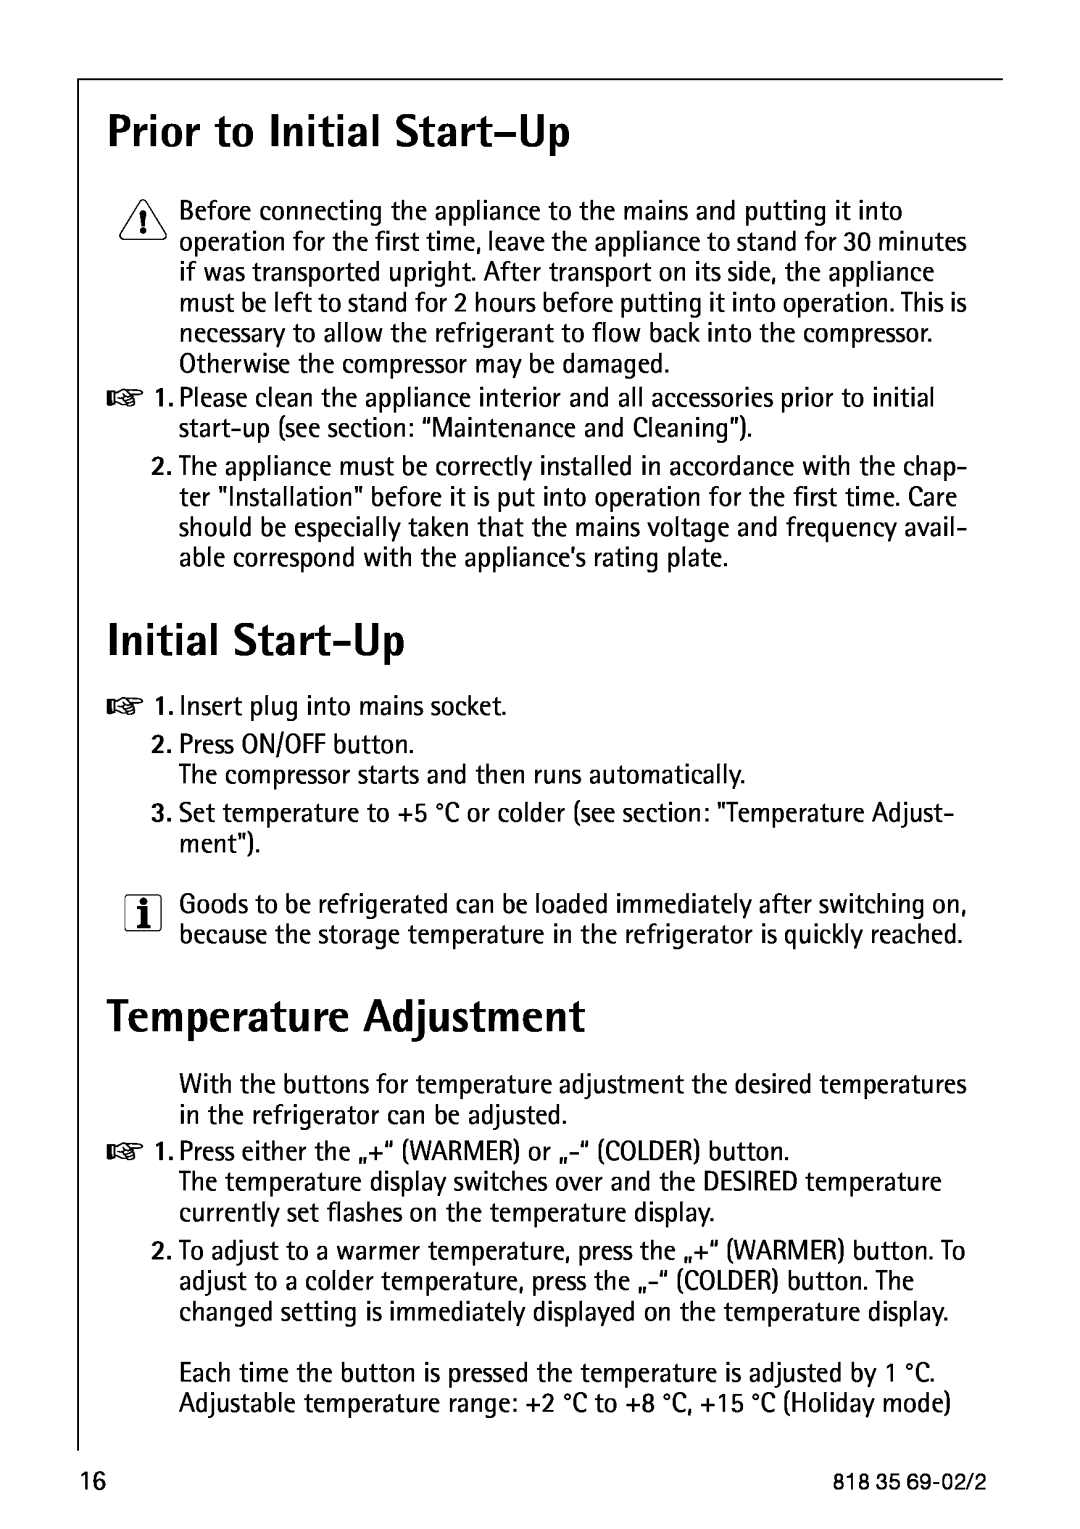 AEG S75578KG3 manual Prior to Initial Start-Up, Temperature Adjustment 